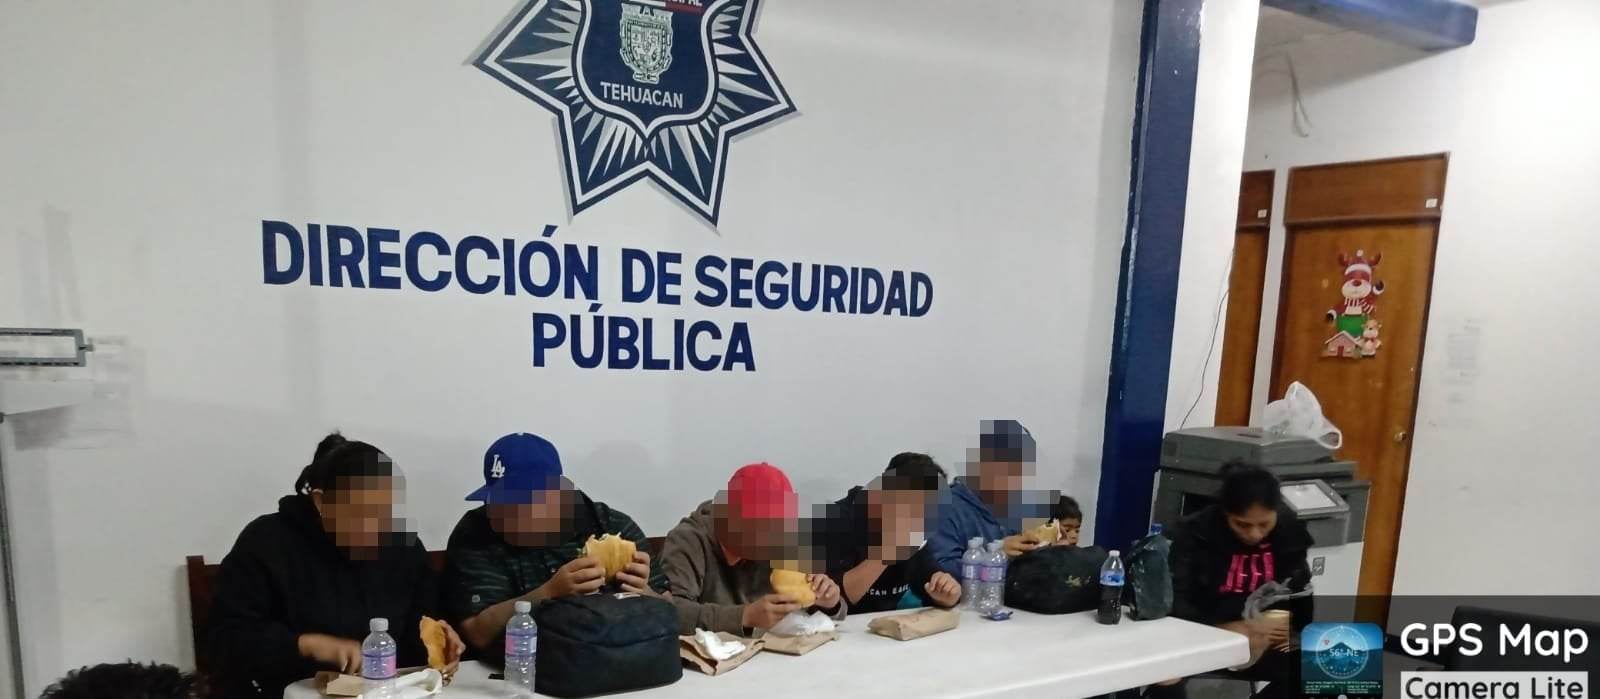 Tras persecución detienen a 17 indocumentados en Tehuacán 